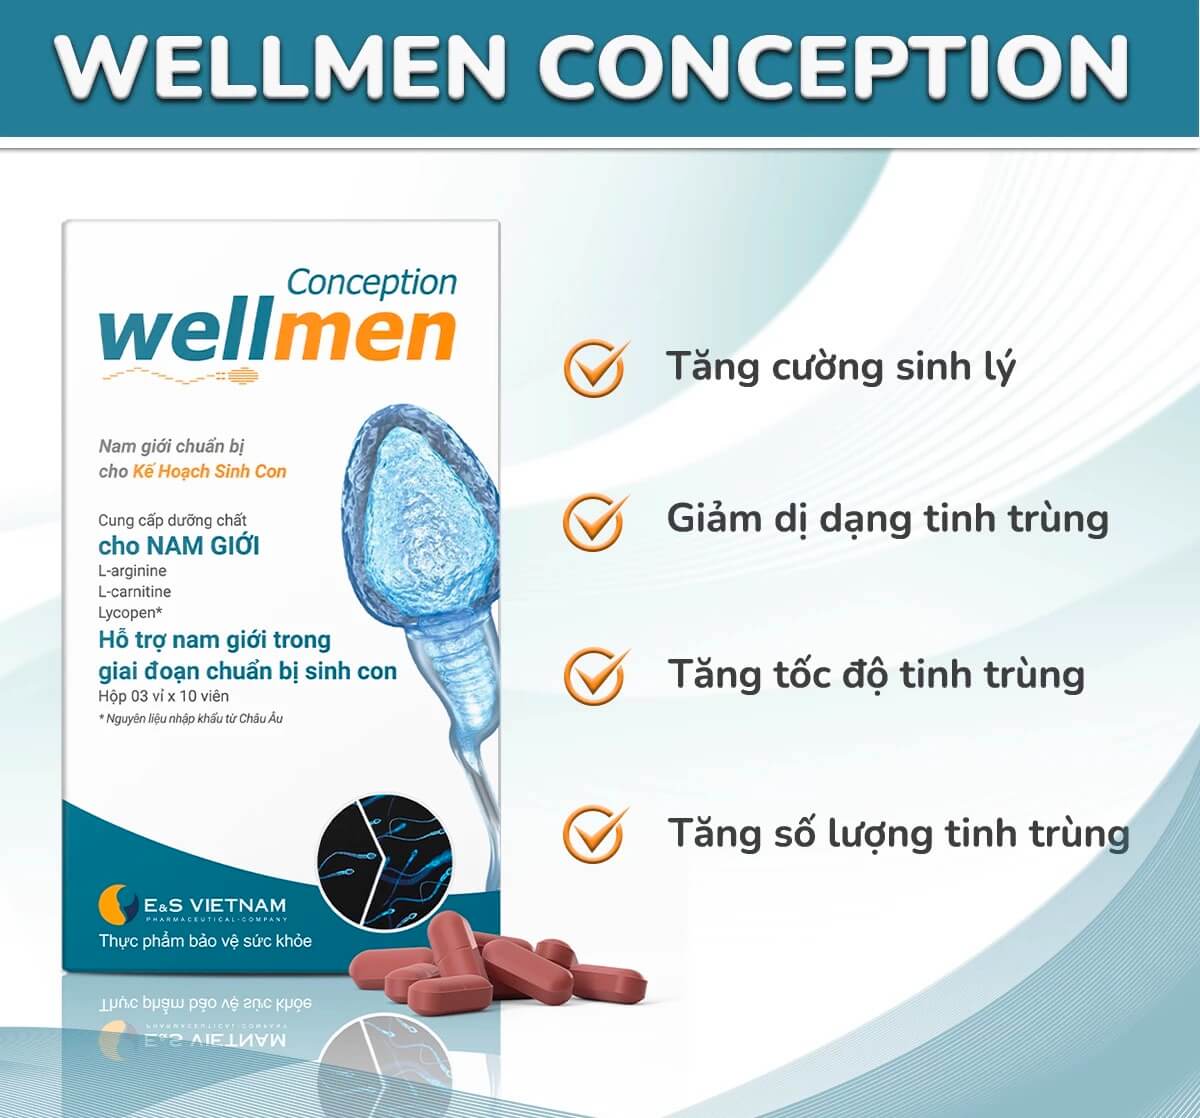 Wellman conception có tác dụng gì thuốc wellmen conception có tốt không hình 19